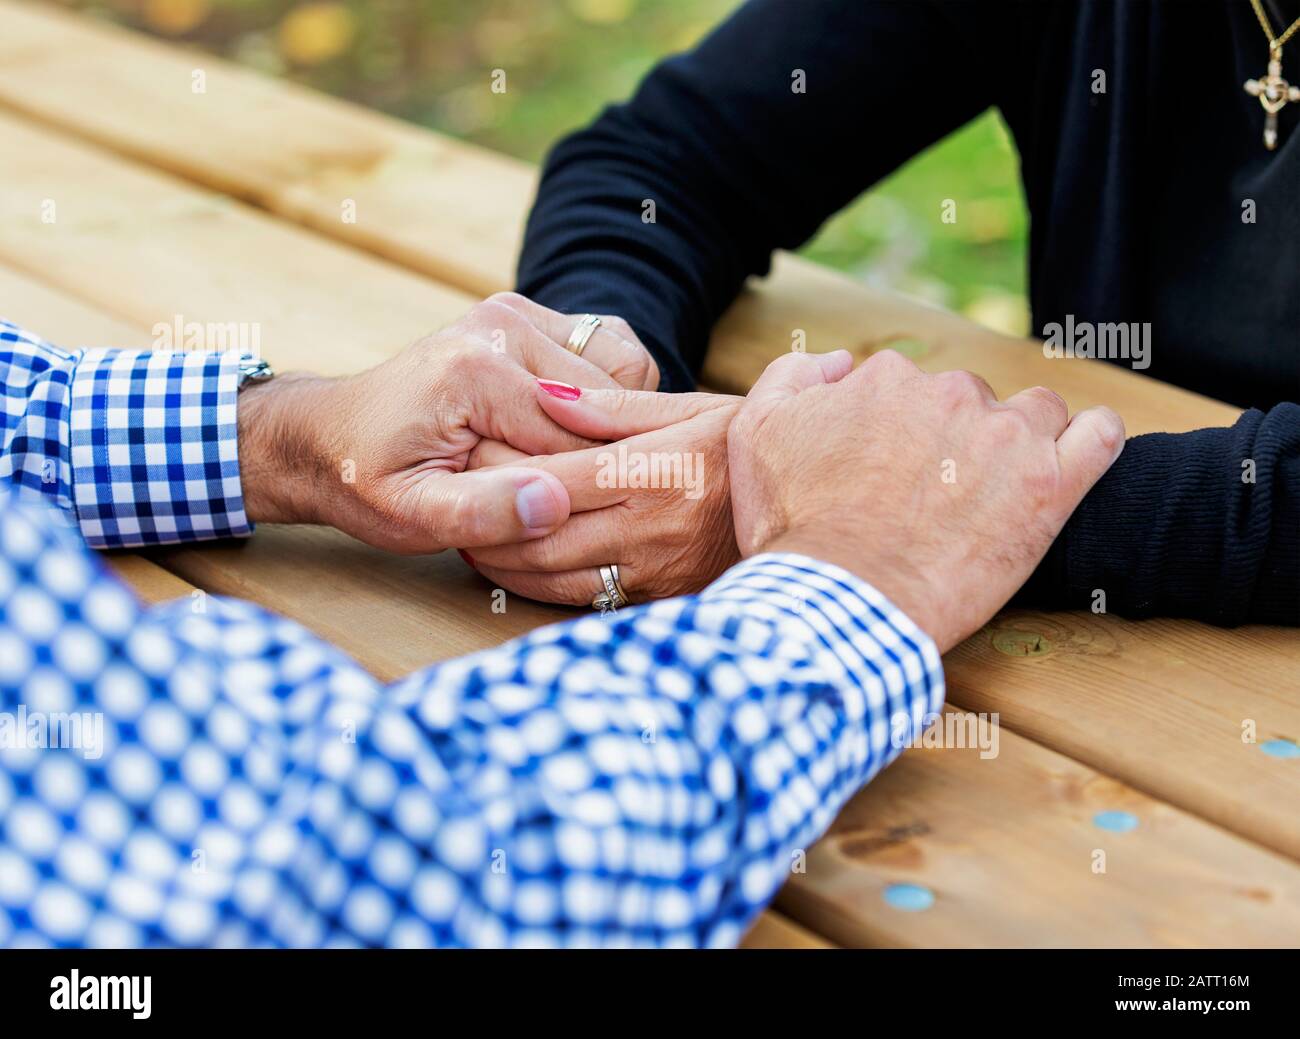 Un couple mature priant ensemble à une table de pique-nique après avoir passé un certain temps de qualité à discuter de leur foi; St. Albert, Alberta, Canada Banque D'Images